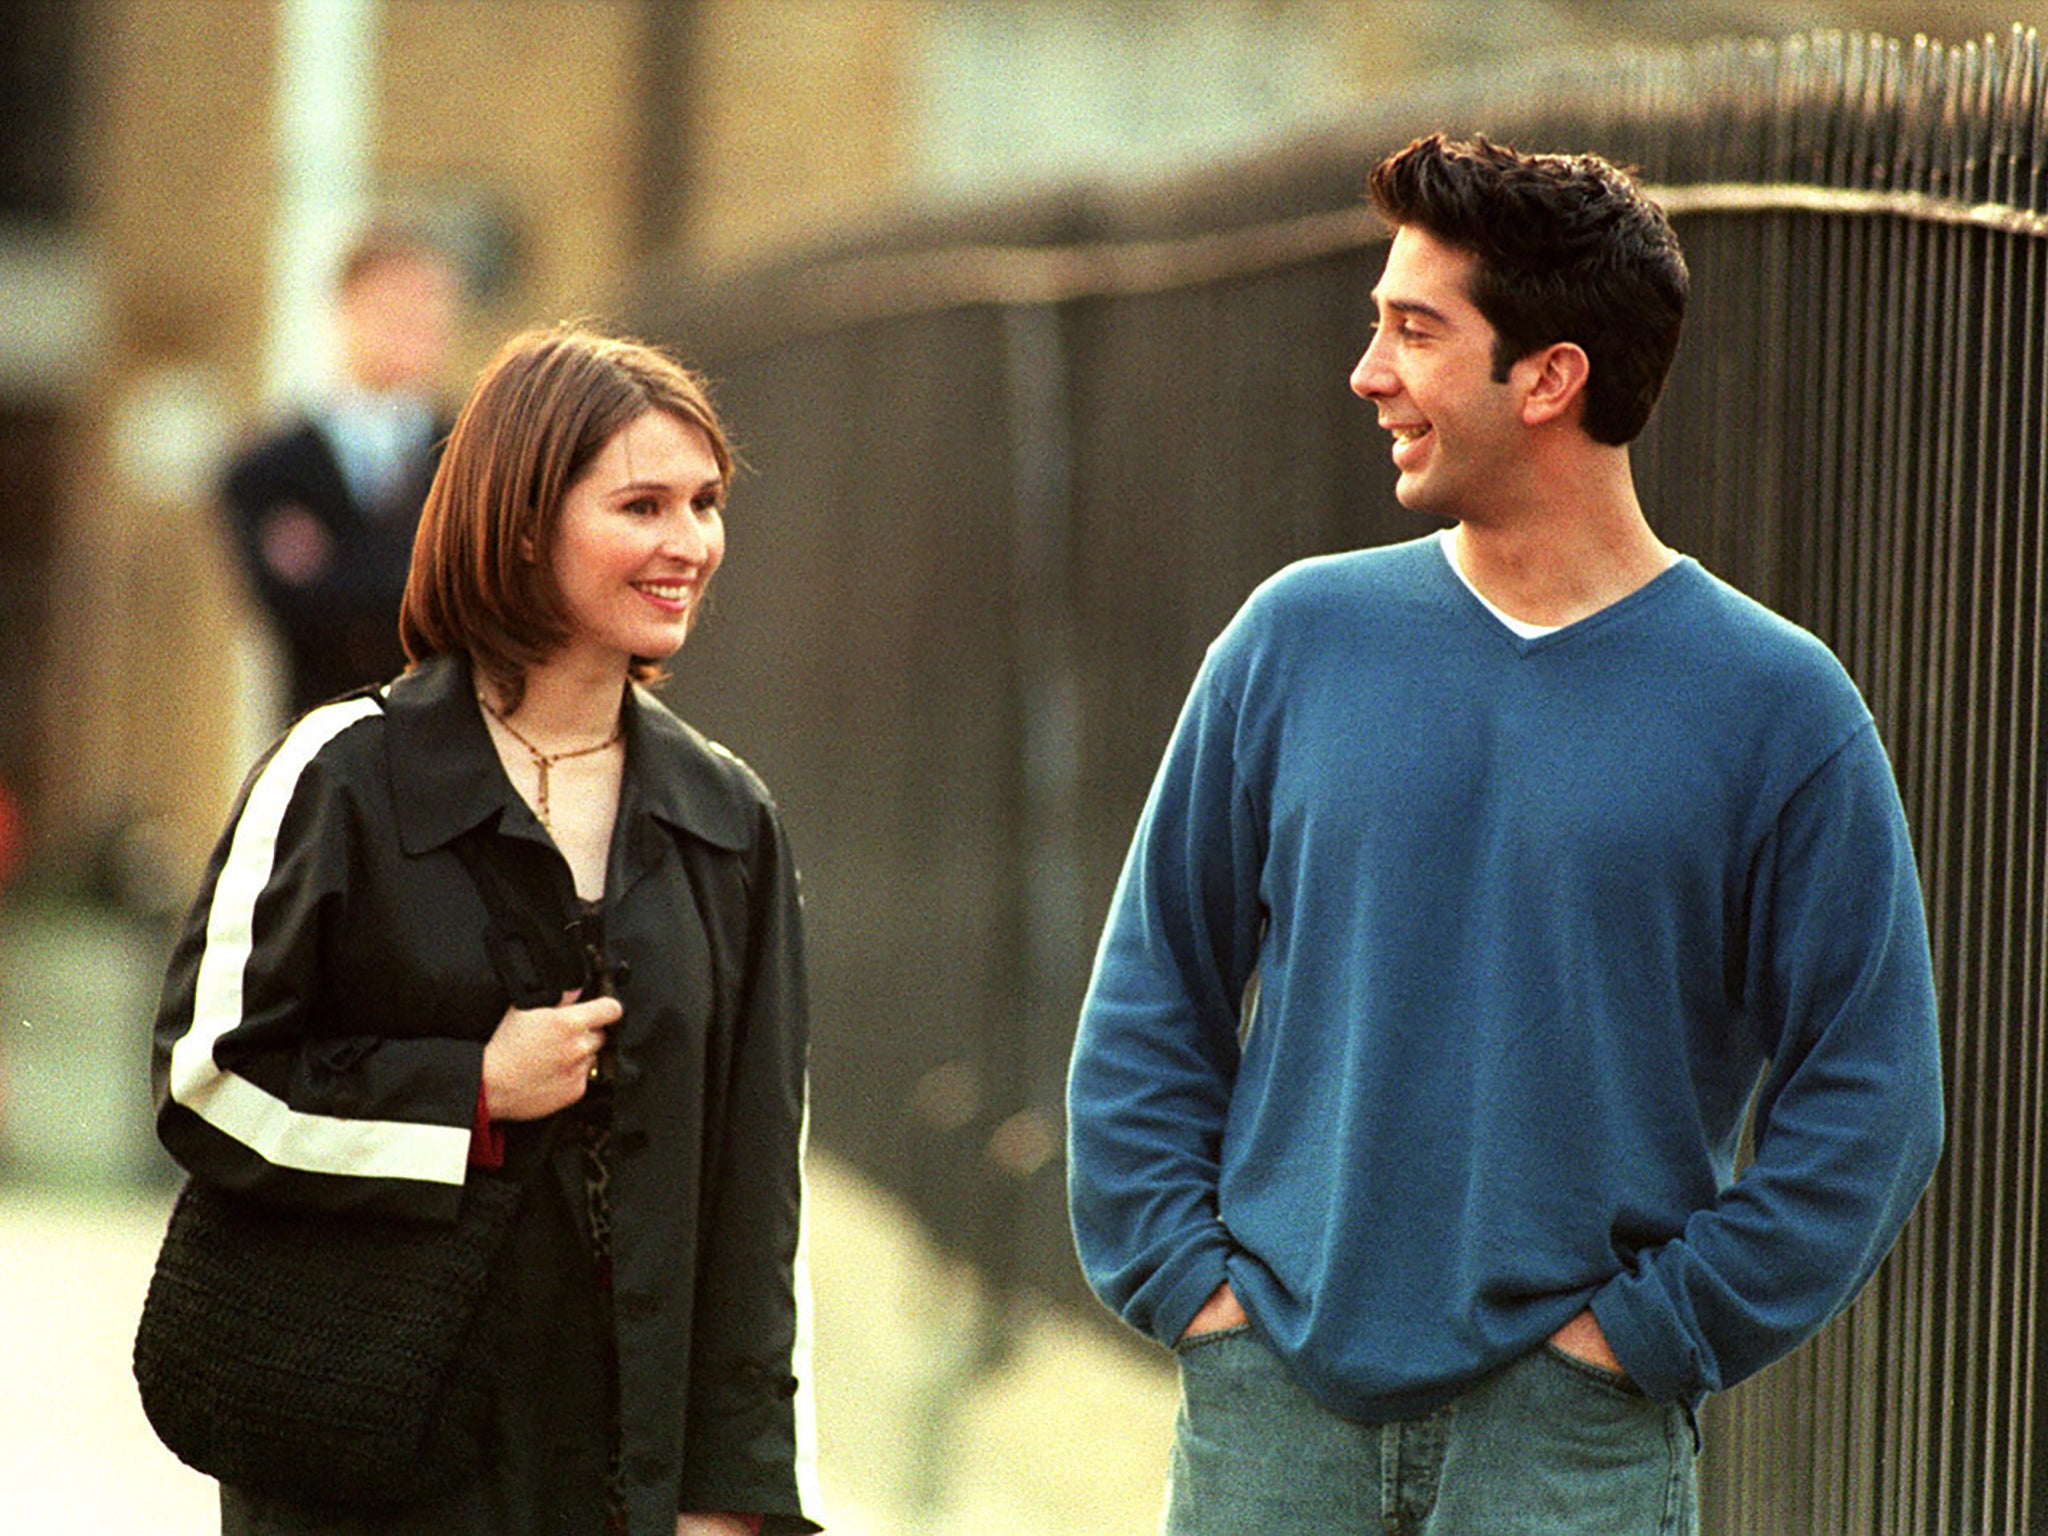 Baxendale as Emily, alongside David Schwimmer’s Ross, in ‘Friends'